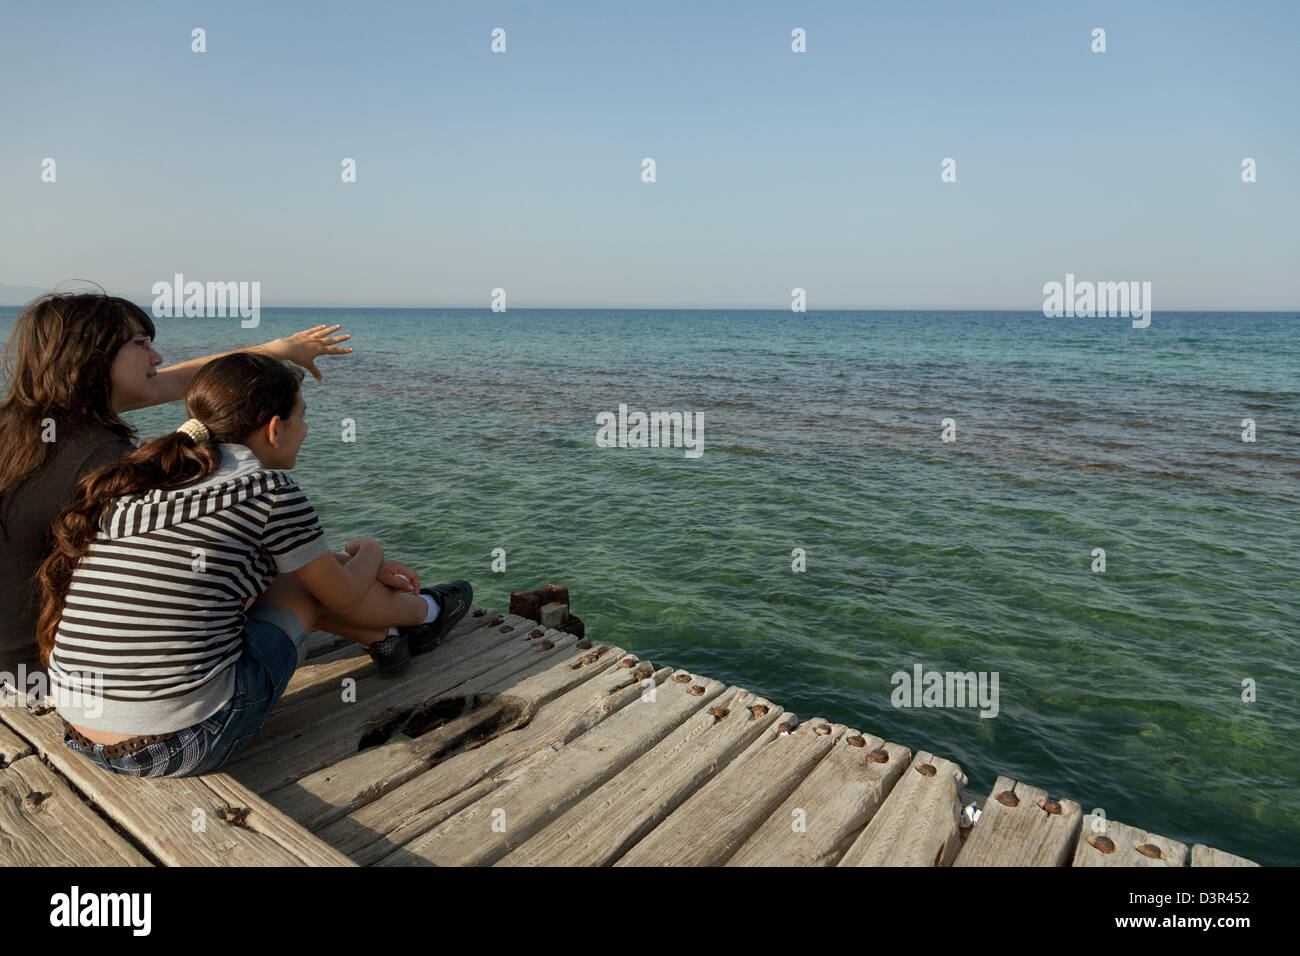 Famagusta, türkischen Republik Nordzypern, Mädchen sitzen auf einem Dock im Mittelmeer Stockfoto